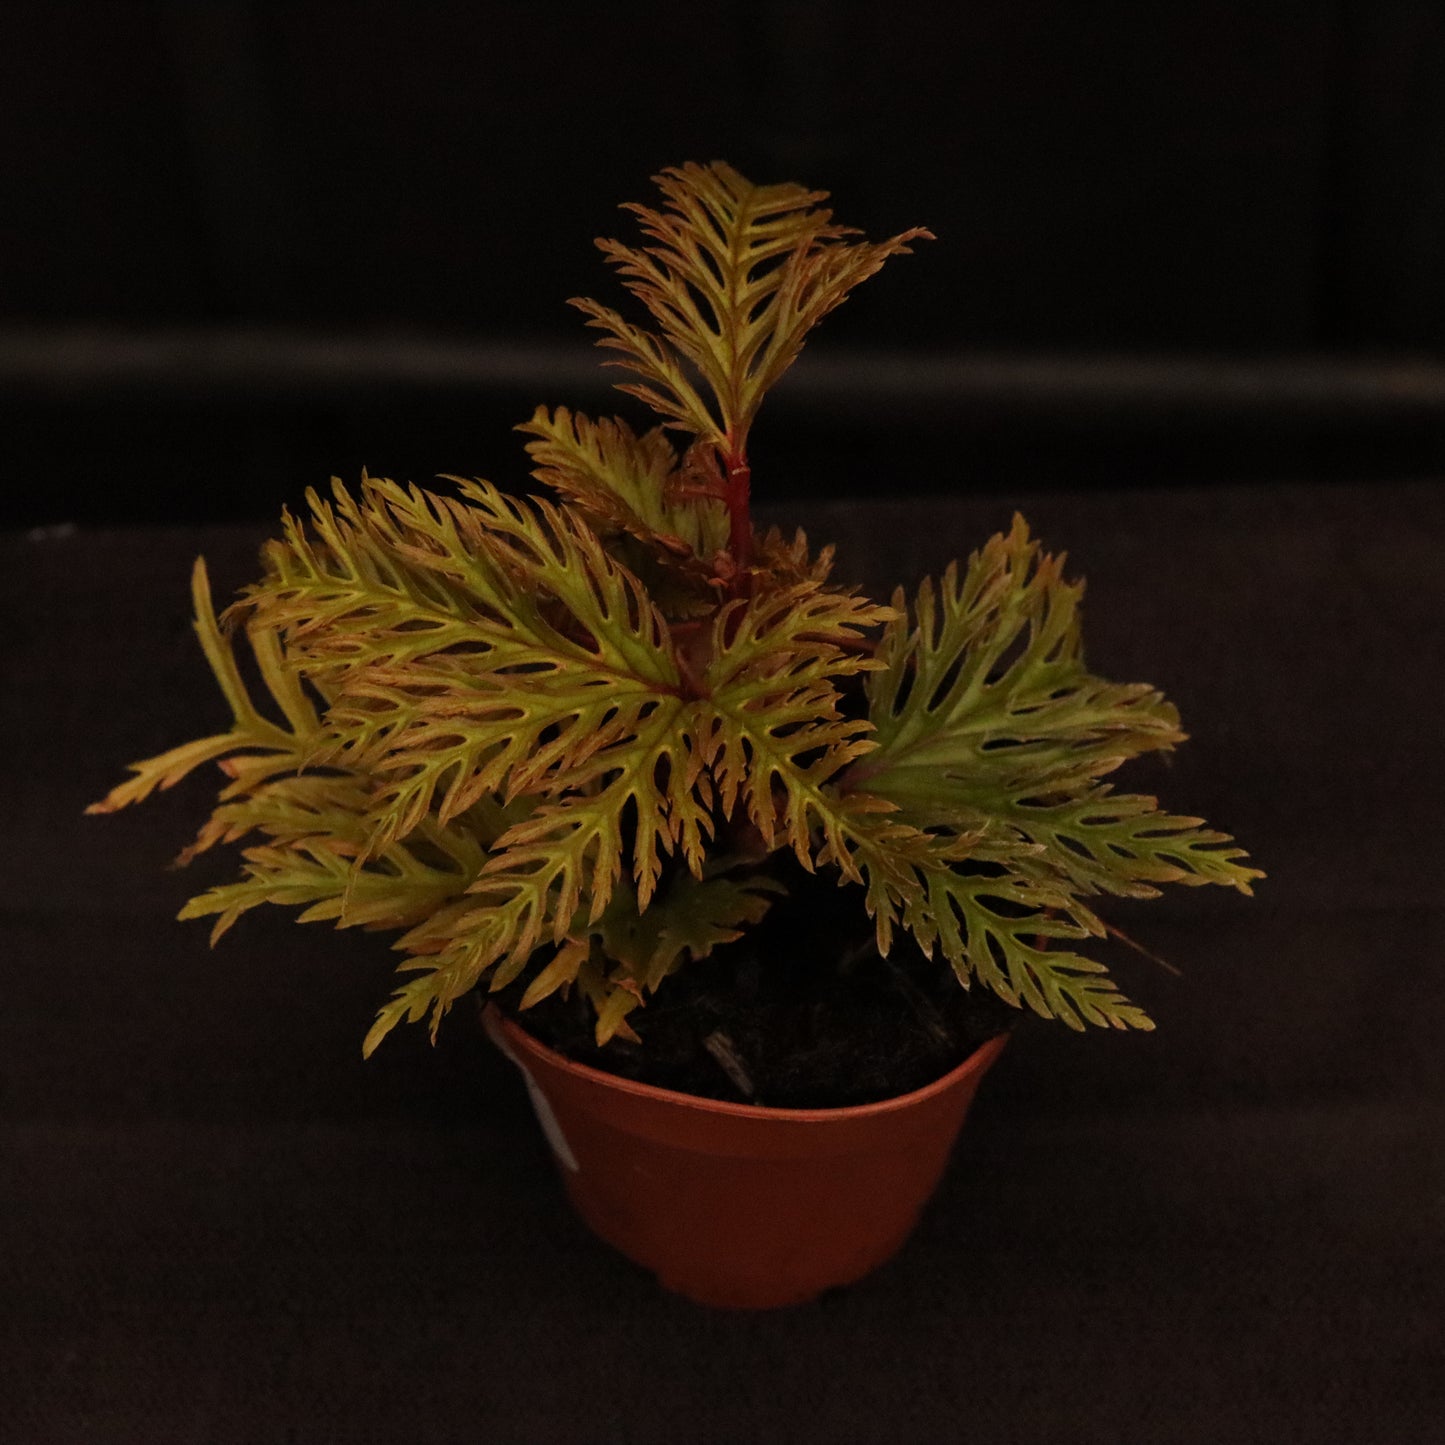 Begonia Bipinnatifida "Fern Leaf" - Grower's Choice